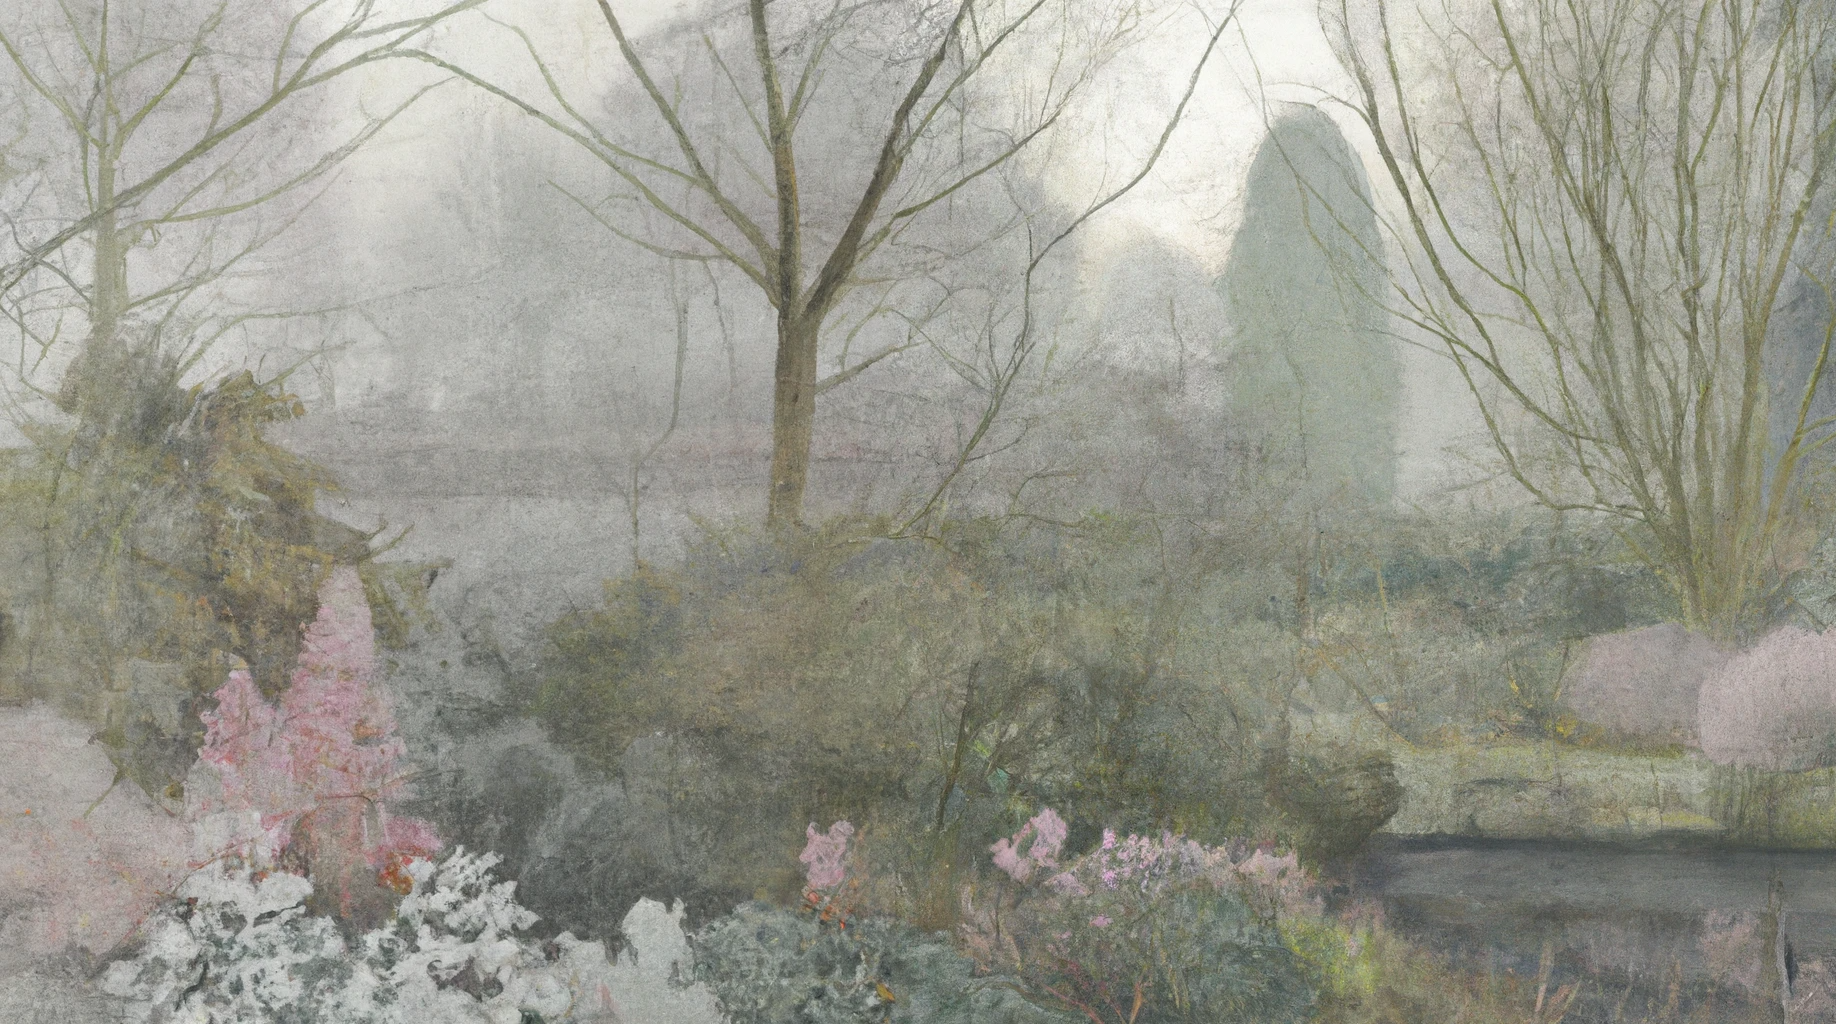 DALL·E 2022-12-11 10.50.14 - peinture flamande d'un jardin anglais sauvage dans la brume de l'hiver dans les tons gris et rose.png